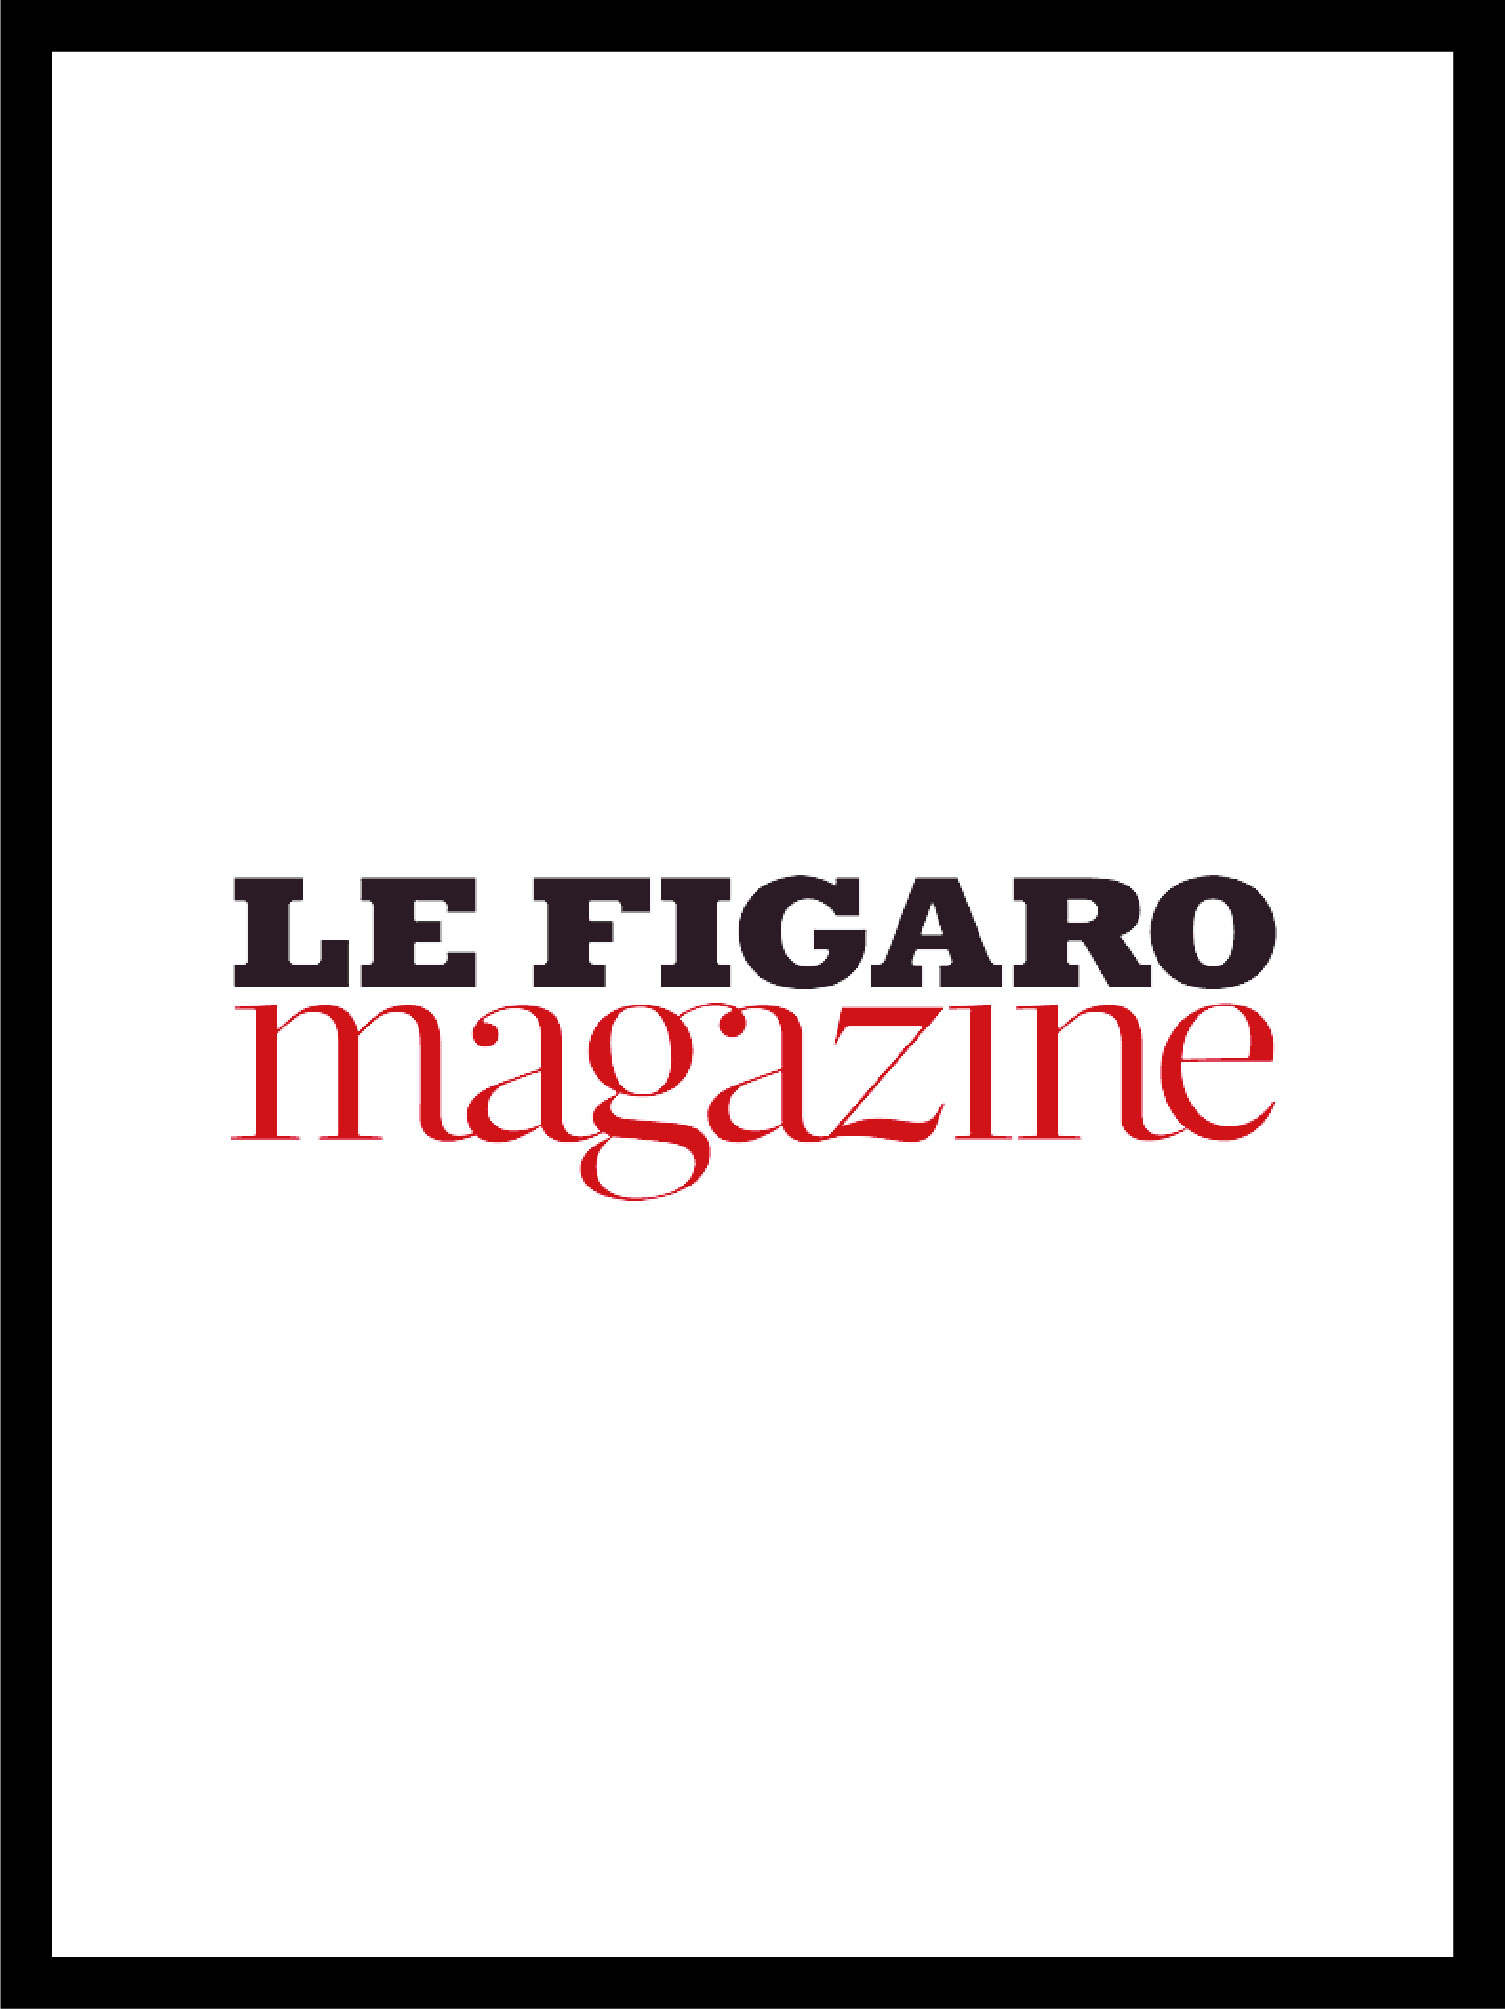 logo of the magazine le figaro magazine